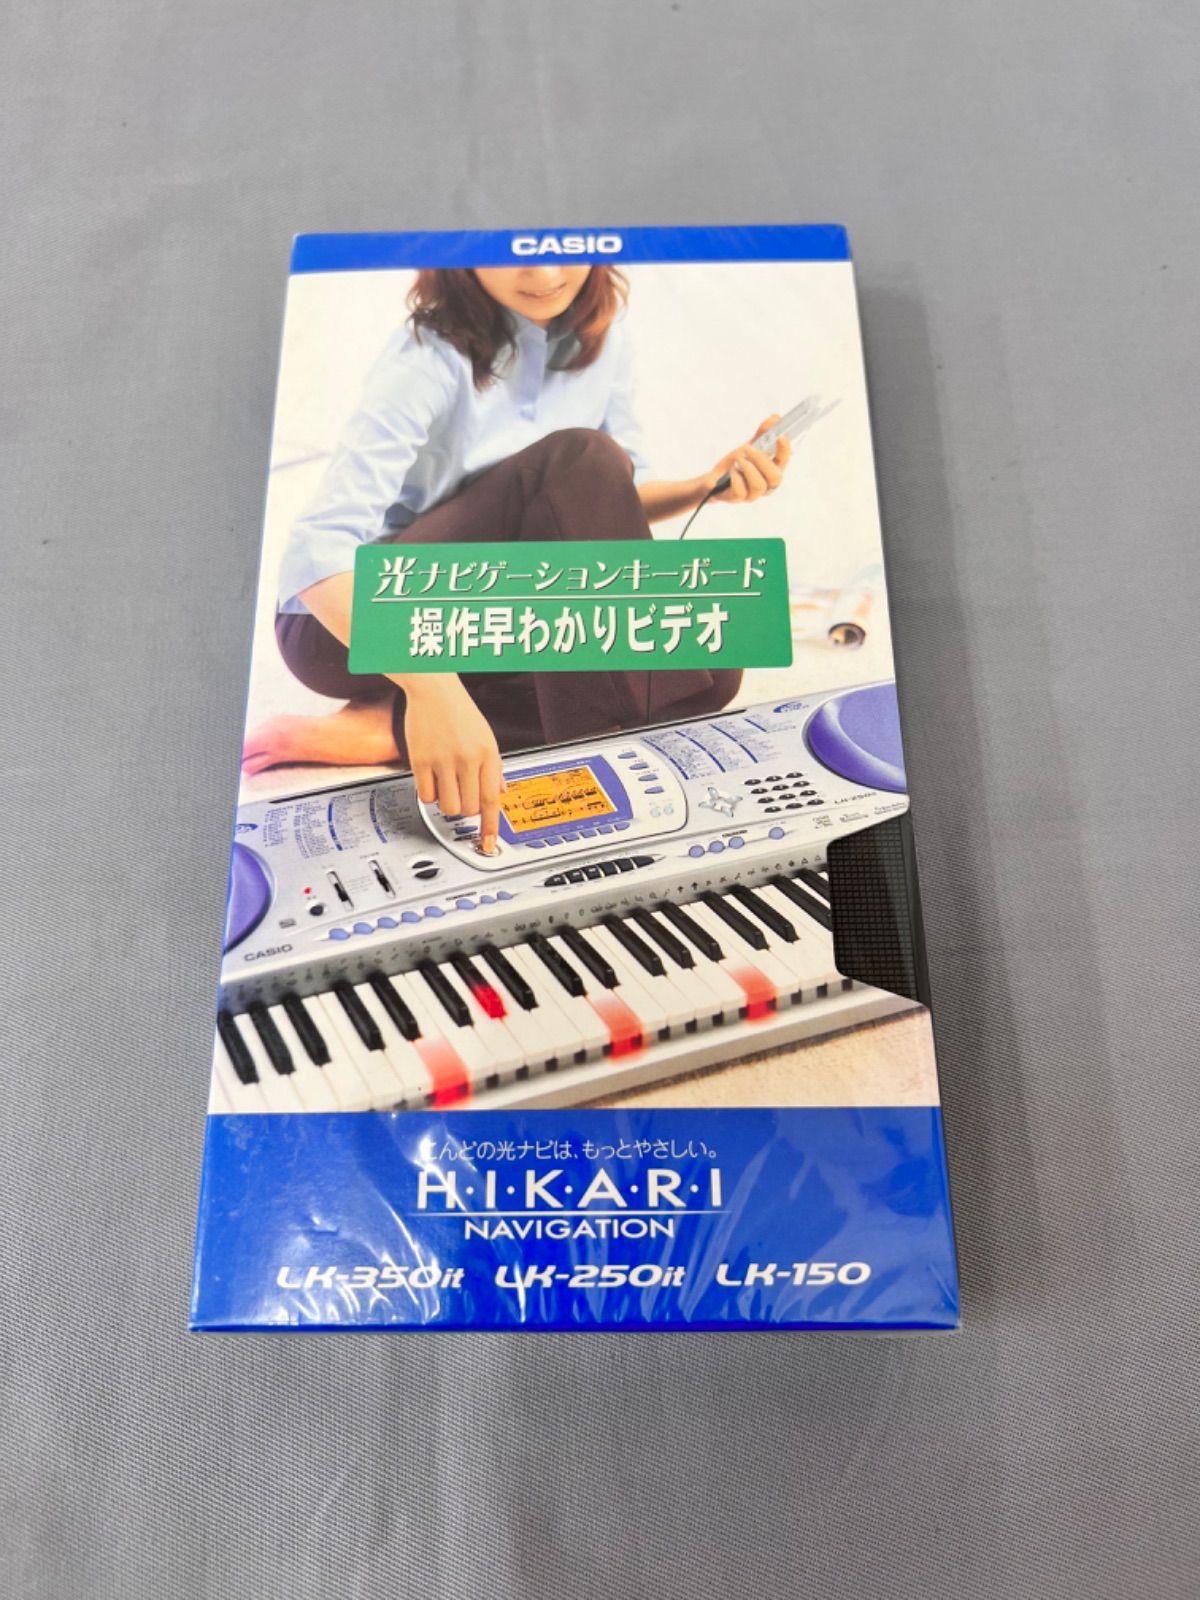 カシオピアノキーボード LK-350it - 鍵盤楽器、ピアノ